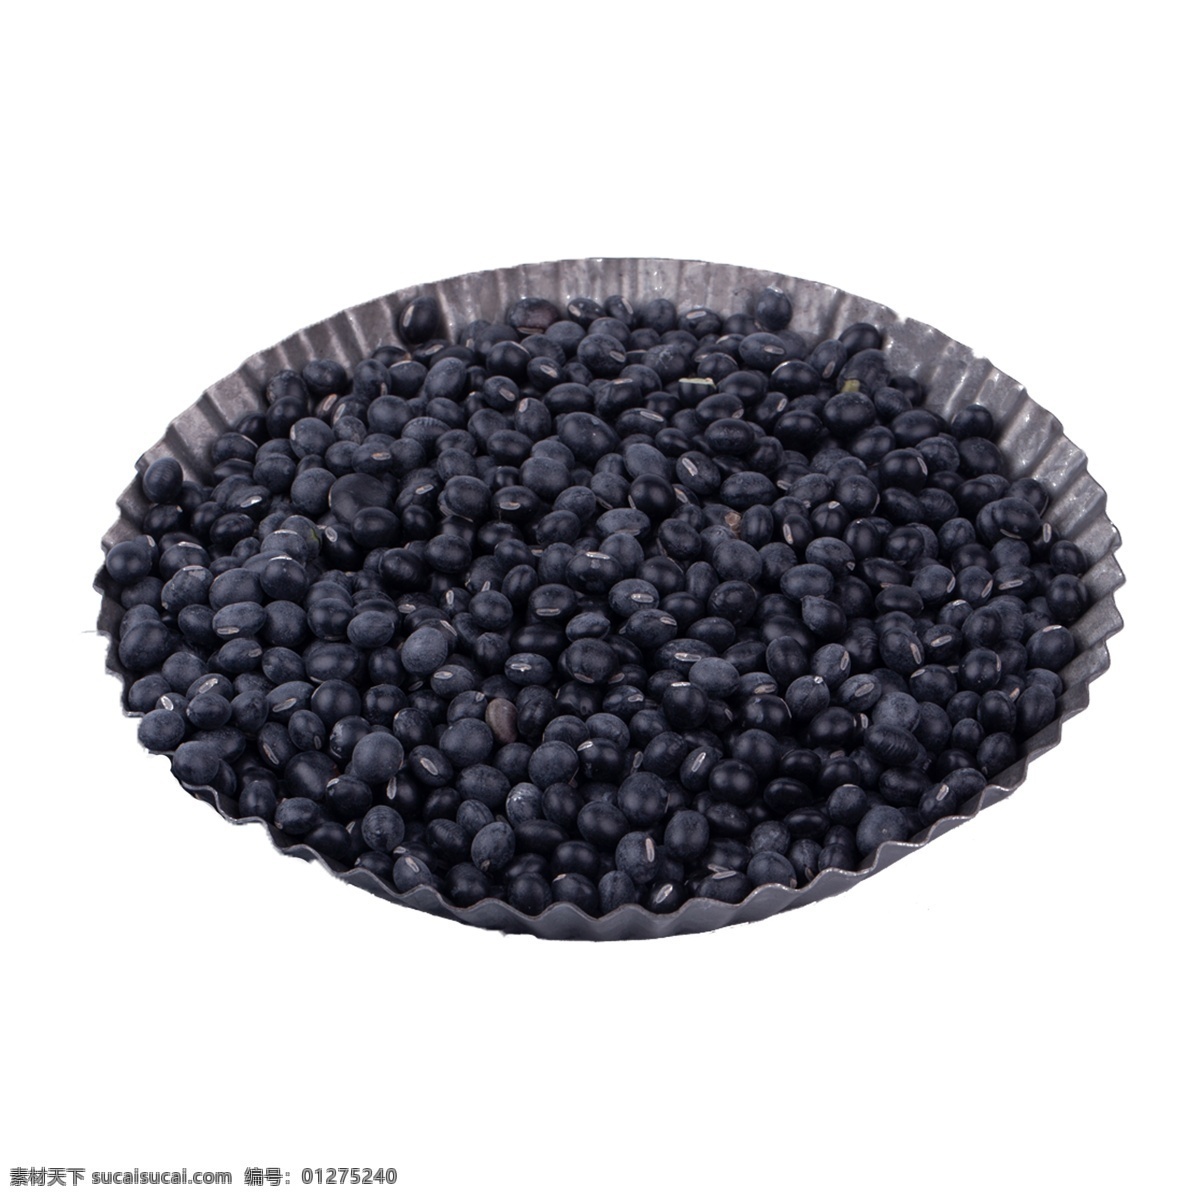 黑豆 免 抠 许多黑豆 豆类食物 豆子 营养 植物 食物 许多黑豆免抠 豆类 粗粮 谷香